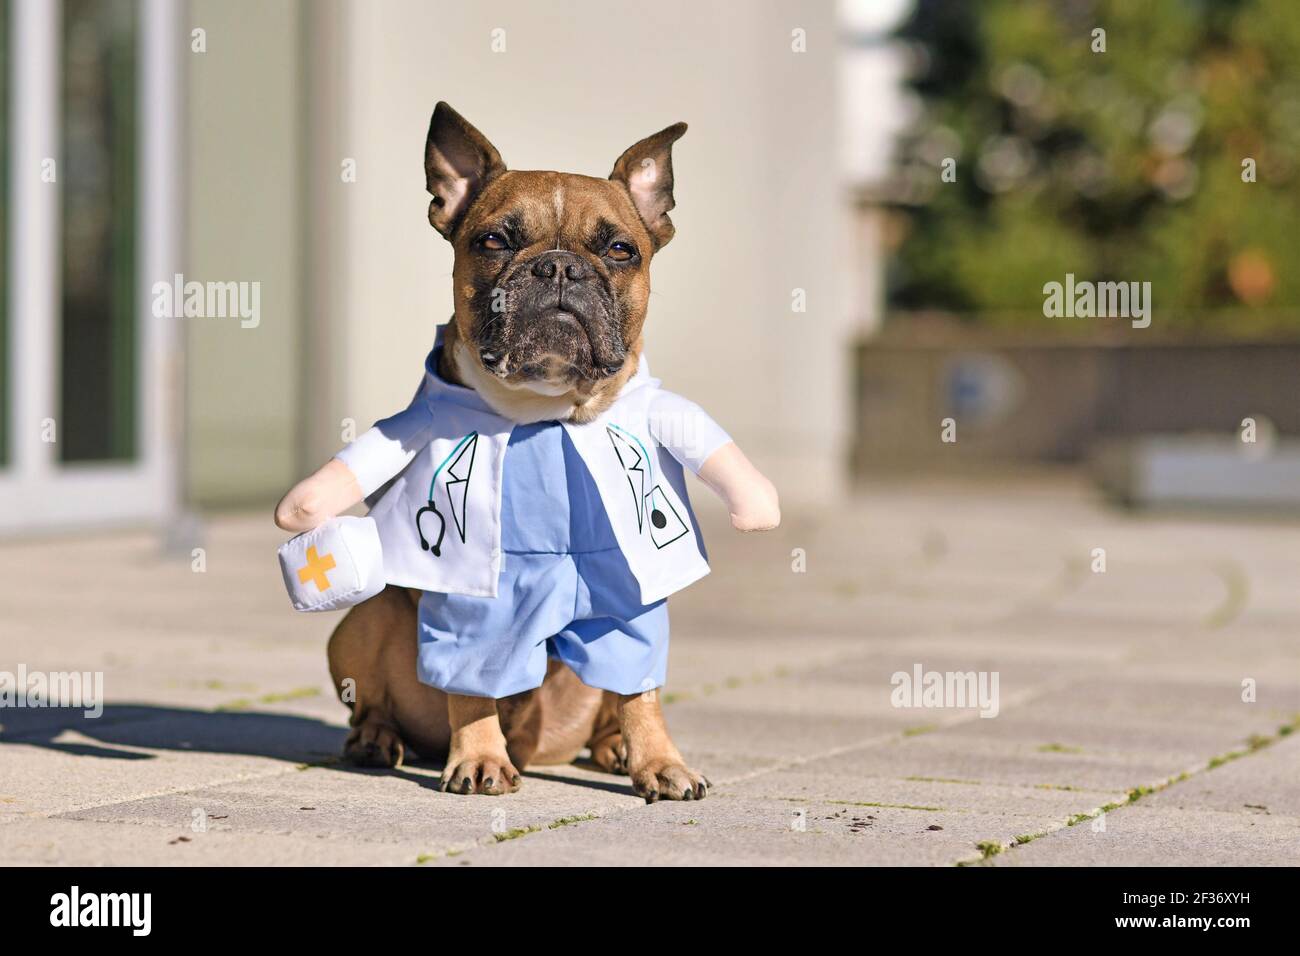 Adorable chien Bulldog français habillé avec un drôle de laboratoire de docteur costume de manteau avec stéthoscope et faux bras tenant le sac de médecin Banque D'Images